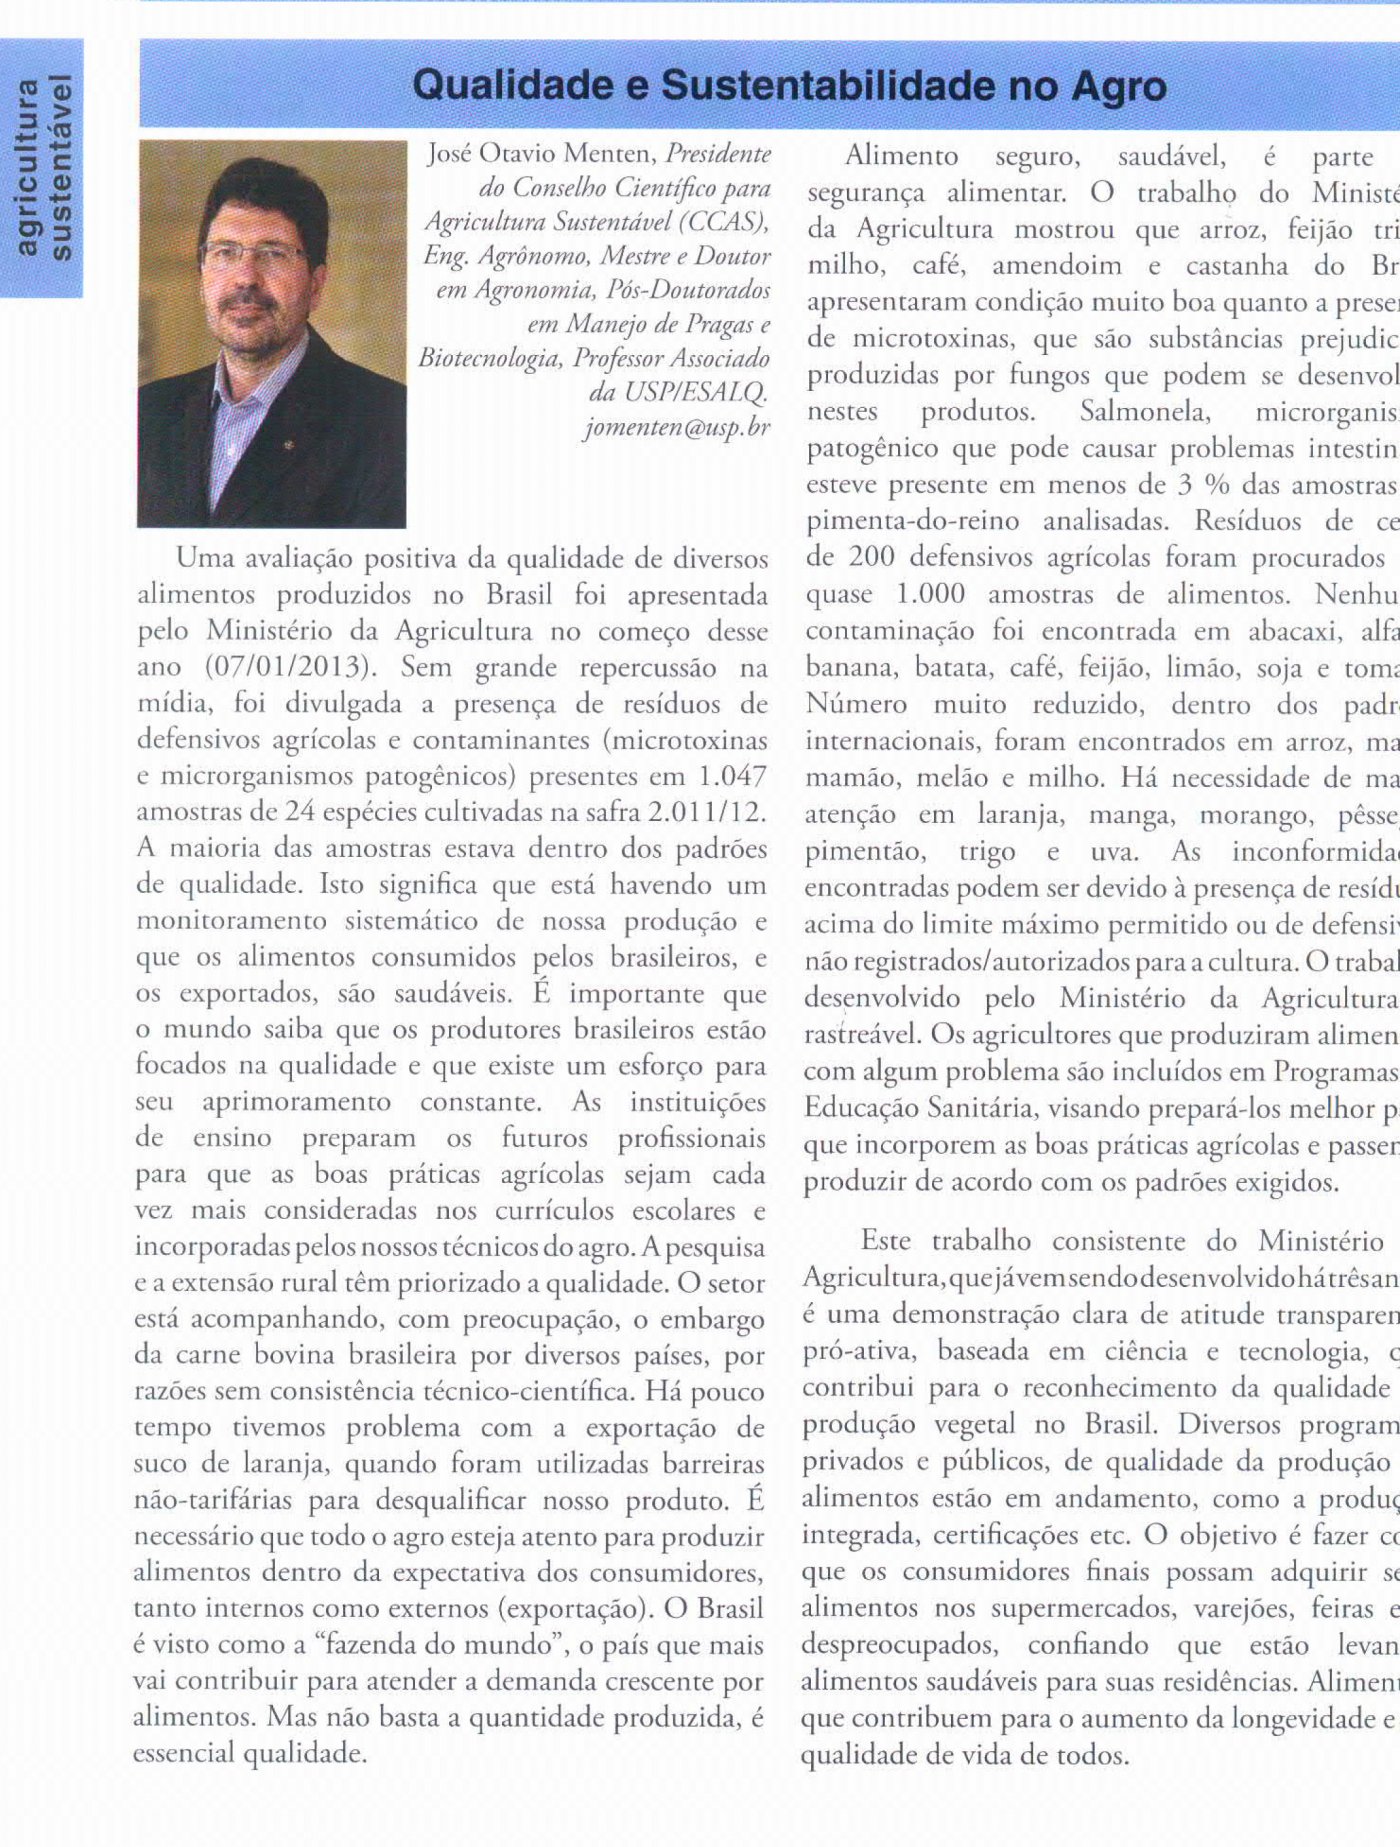 Revista Batata Show publica artigo do presidente do CCAS